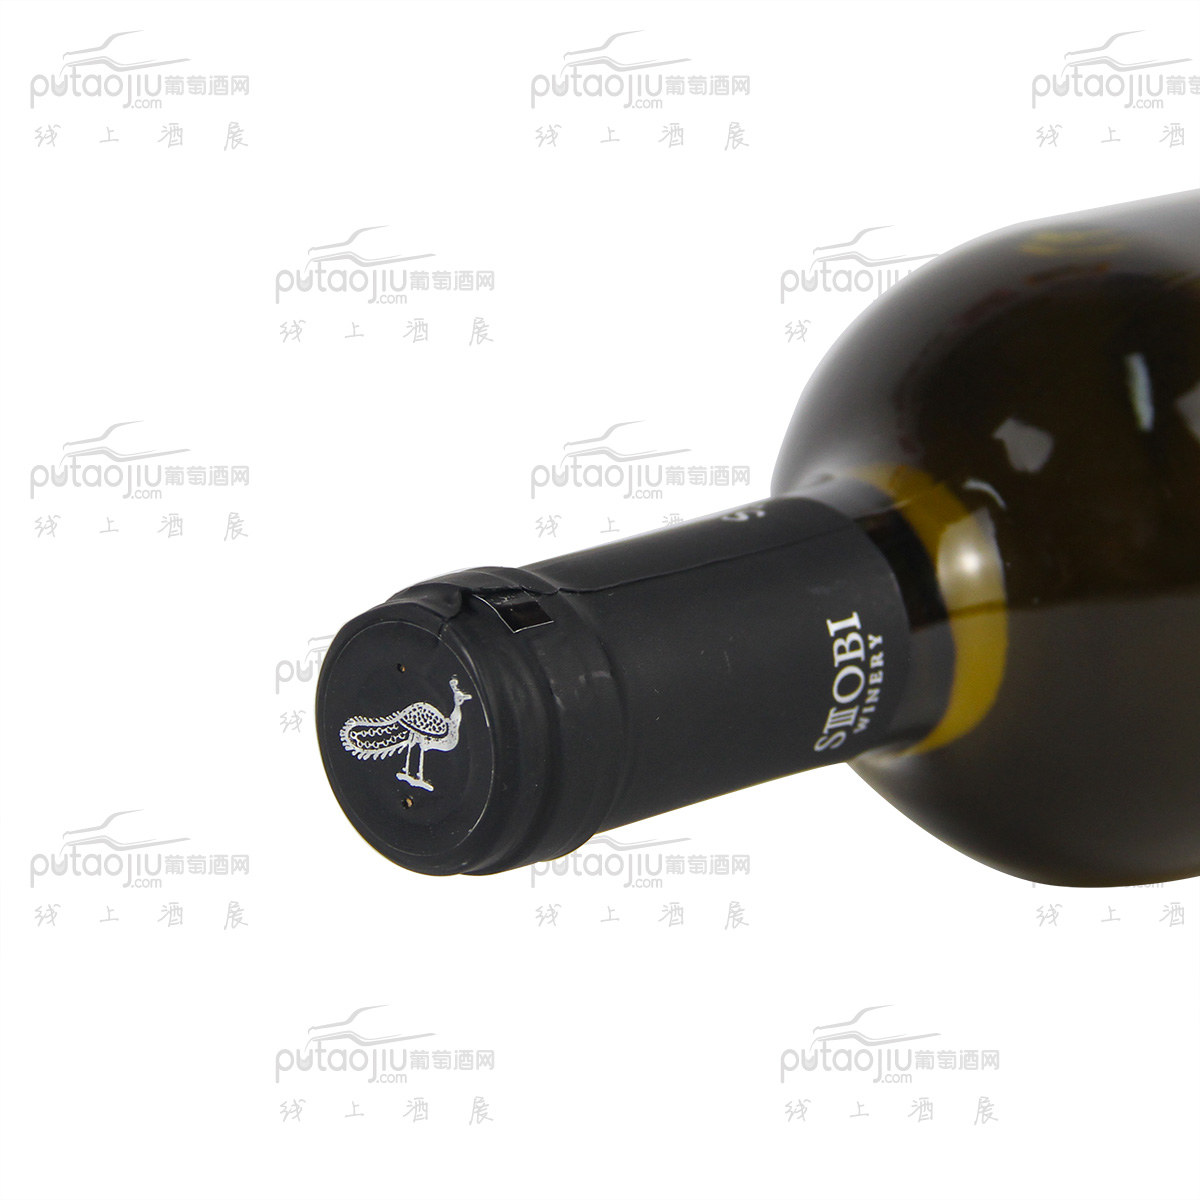 STOBI斯多比酒庄(SIKI)斯科 A级干白葡萄酒小众国家原装进口北马其顿红酒